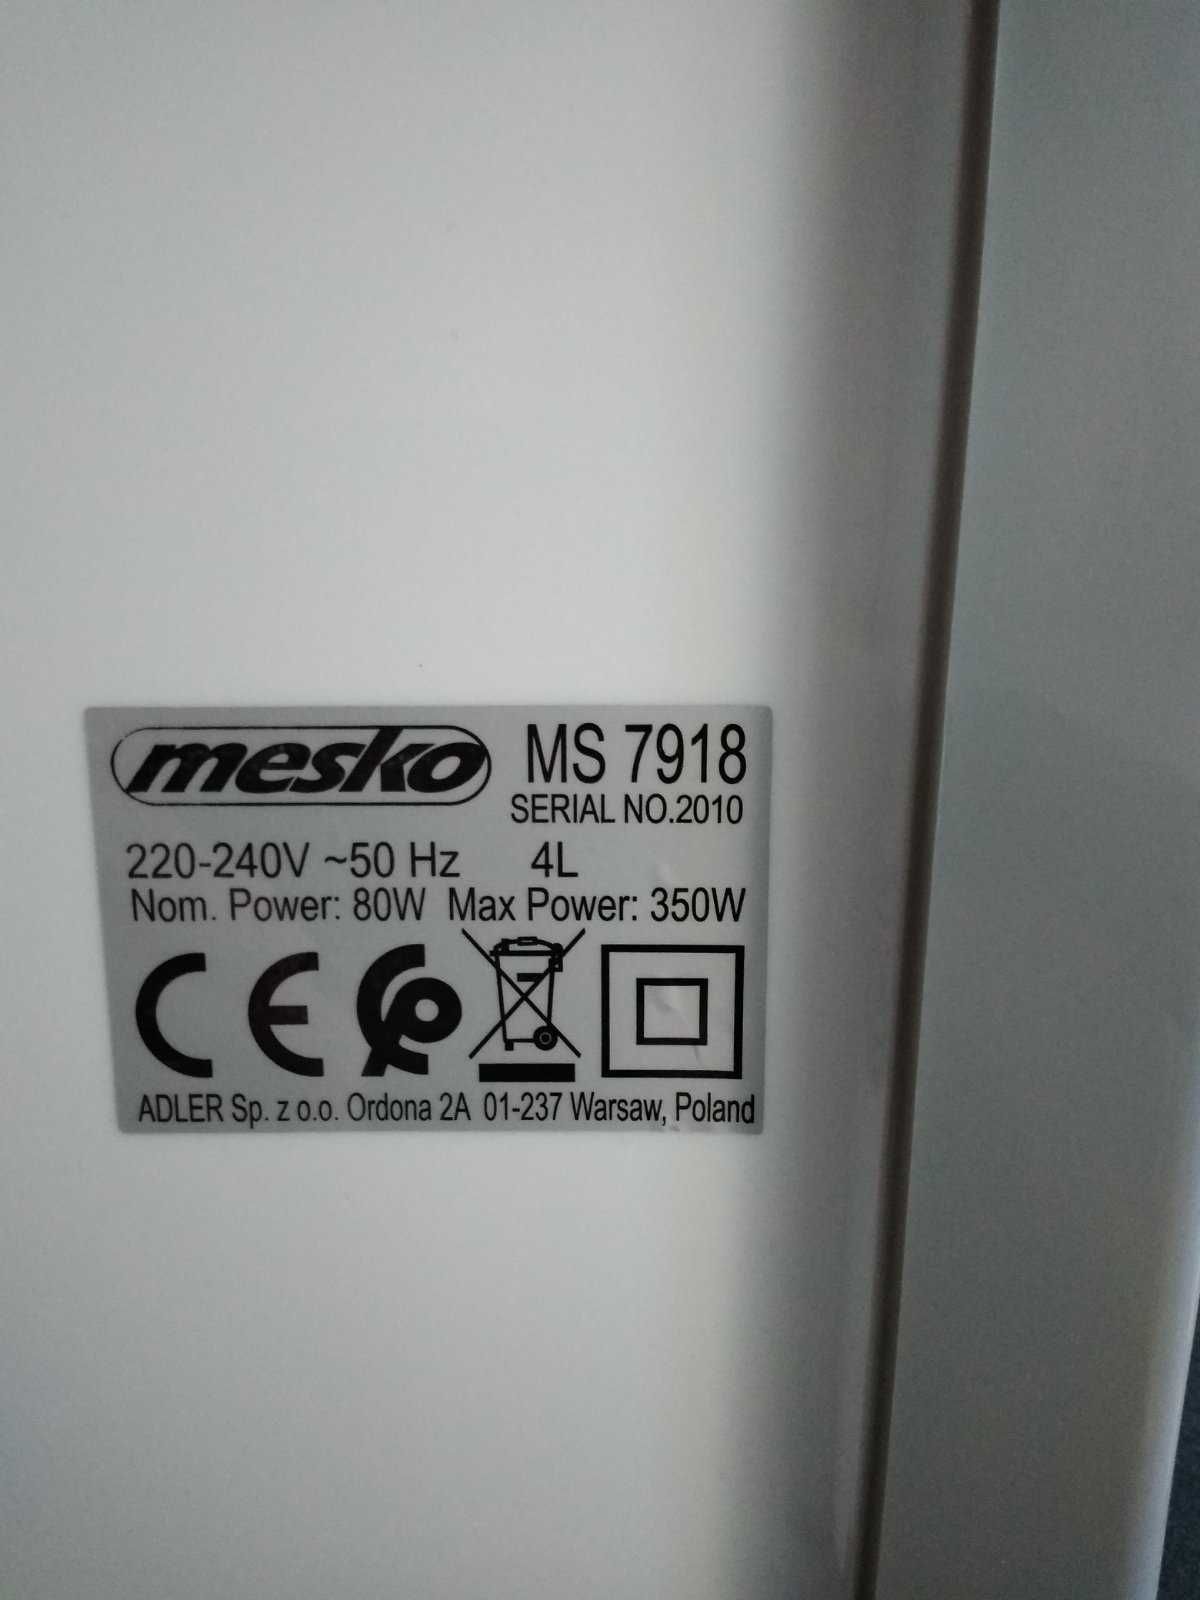 Продам новый воздухоохладитель Mesko MS 7918 цена 2000 грн